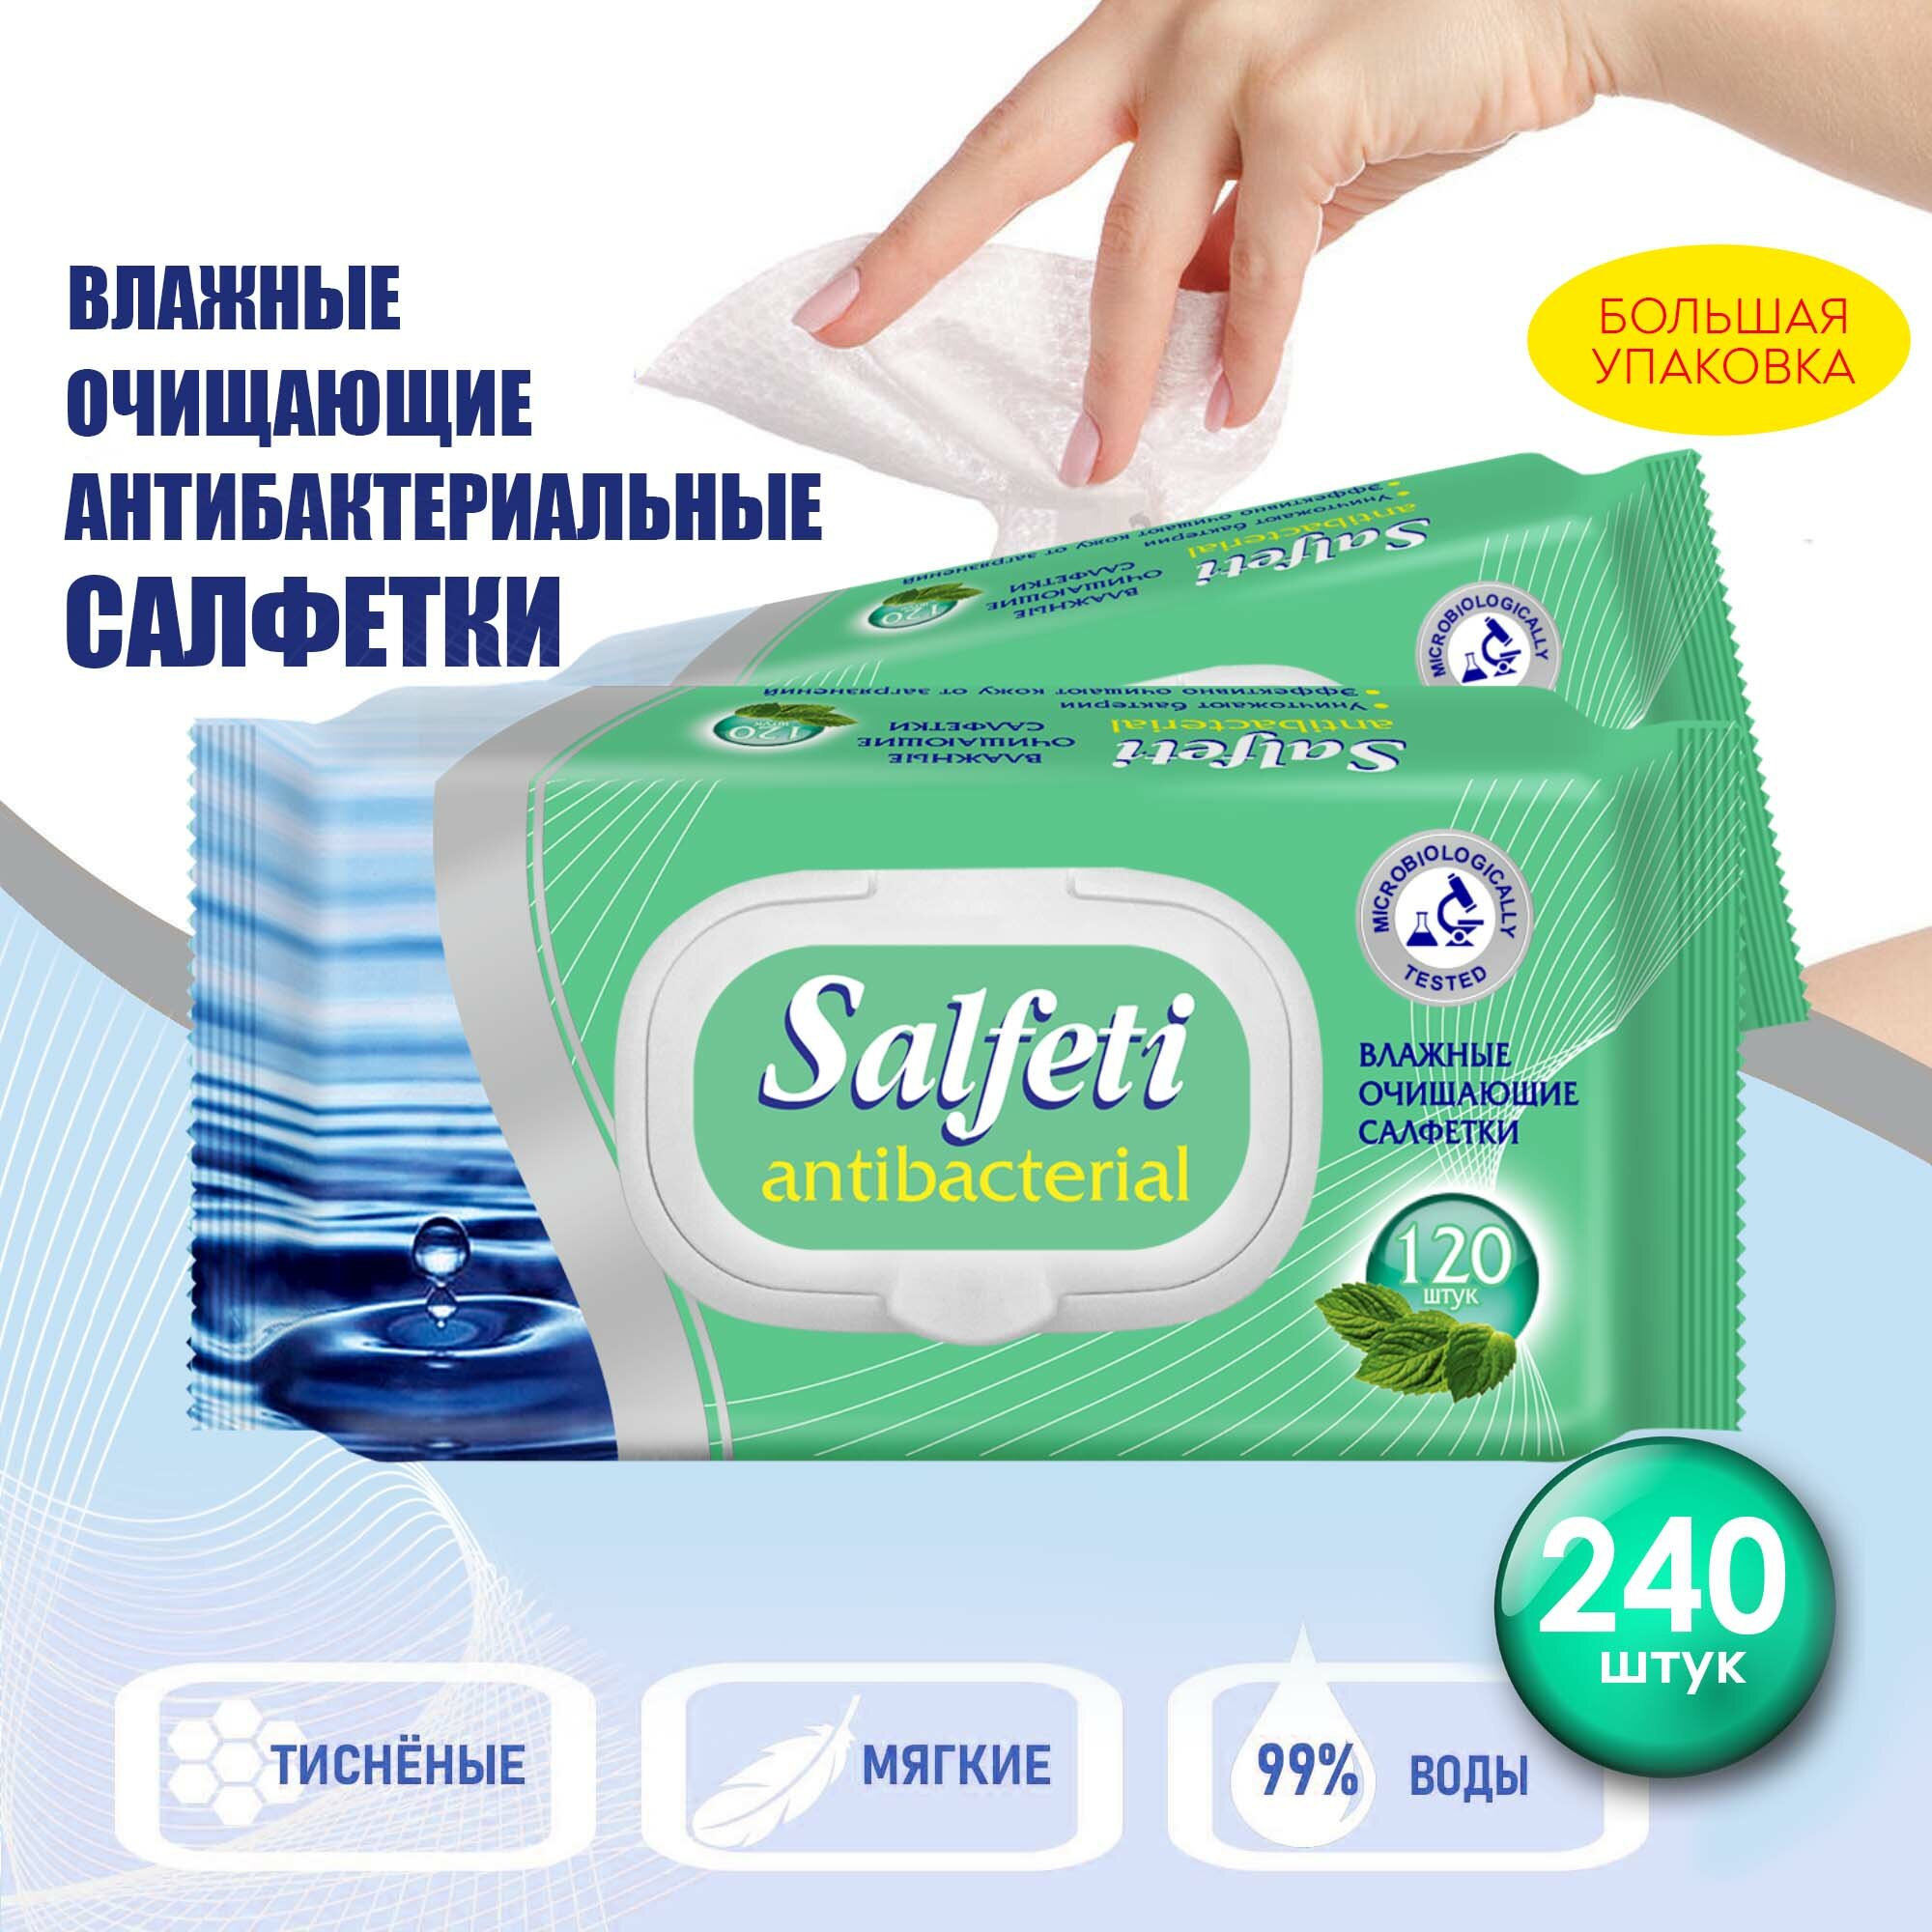 Салфетки влажные Salfeti Antibacterial очищающие, антибактериальные ,с клапаном, 2 уп. по 120 шт.